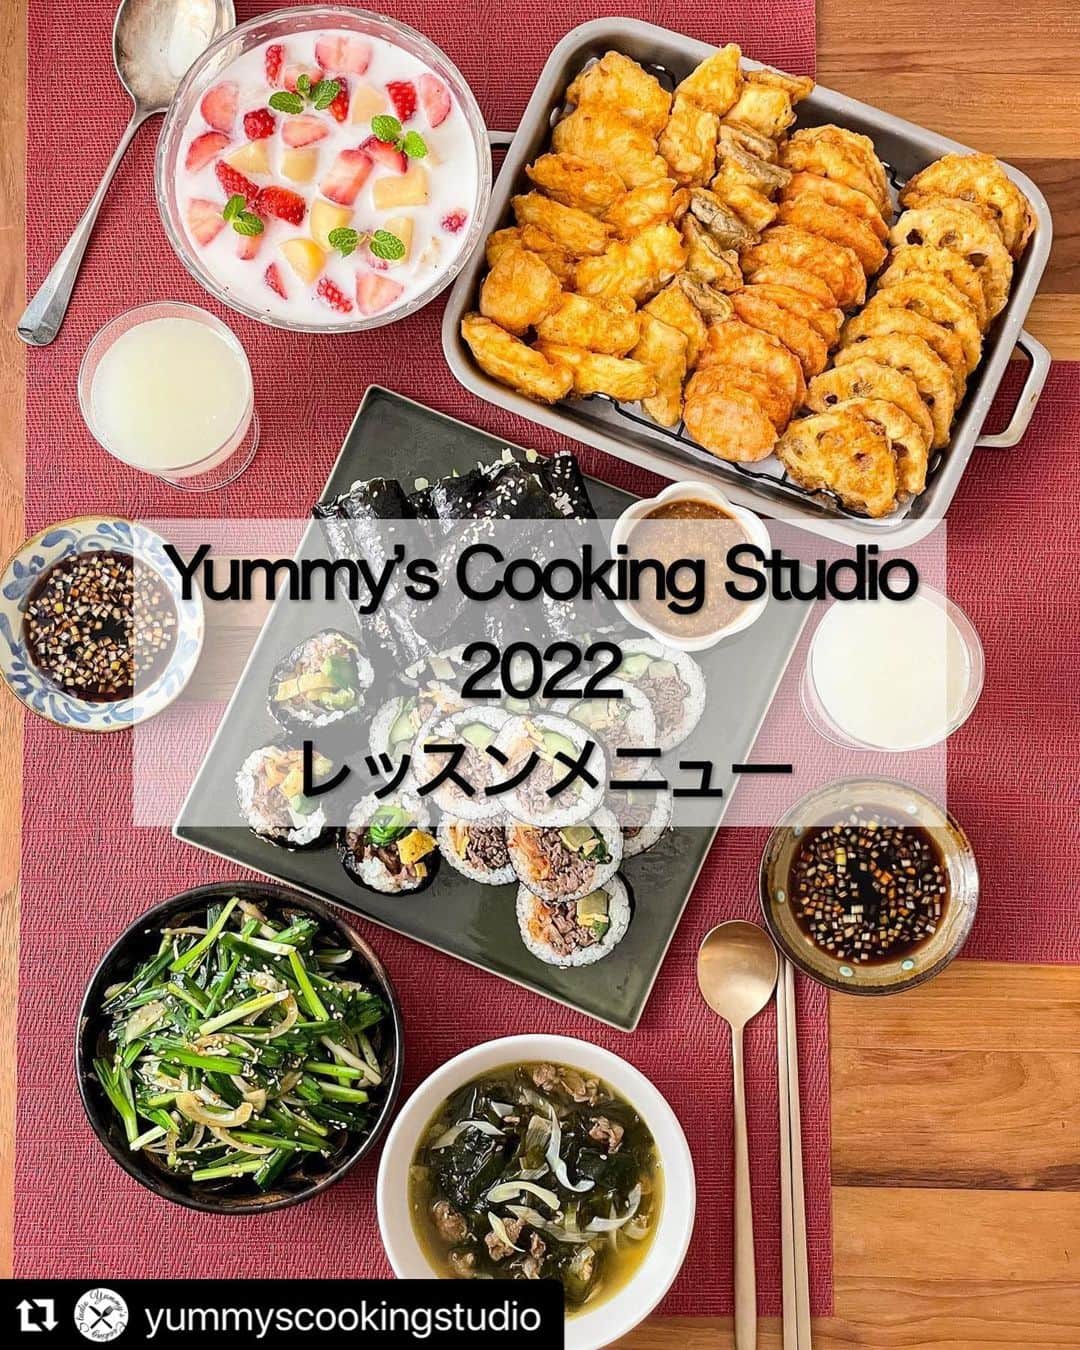 ヤミーさんのインスタグラム写真 - (ヤミーInstagram)「料理教室アカウントで、2022年レッスンを振り返り中。  レッスンでどんな料理を作るのかまとめてご紹介しますので、のぞいてみて下さいね😊  #Repost @yummyscookingstudio with @use.repost ・・・ ヤミーズクッキングスタジオは、ヤミーオリジナルレシピで世界の料理を簡単に作れて、毎日の食事作りが楽しくなる料理教室です。  “正直、こんなに楽しいと思いませんでした” “お料理もとても実践的でわかりやすくつくってみたくなるようなものばかり” “本の手順だけではなかなか分からないお料理の美味しくするポイント！！” “試食会でワインを交えての談笑。幸せな時間”  などなど、みなさんから嬉しいお声をいただいてます😊  対面レッスンは下北沢、オンラインクラスはスマホやタブレットで世界中どこからでも受講可能です。  世界の家庭料理を作ってみると、きっとこれまで思っていた以上に料理が簡単で、肩の力が抜けると思います。  思わぬ組み合わせに驚いたり、新しい美味しさに出会ったり。 世界の料理や食材はワクワクにあふれています。  それだけではなくもちろん、美味しく仕上げるコツ、時短にするコツ、調理の基本なども学んでいただけるようカリキュラムを考えています。  初心者の方には、計量や包丁の持ち方からお教えしますので、はじめての料理教室でも安心して受講いただけますよ。  レッスンを重ねるごとに、食事作りが楽しくスキルアップ！ (あと、カルディ食材を毎月試せます😁)  おうちにいながら料理で世界一周を楽しんでみませんか？  *** こちらは2022年のレッスンメニューです！ご参考まで 毎年、生徒さんからのメニューリクエストも受付てます。  <2022年レッスンメニュー>  1月　韓国料理 「韓国風わかめスープ」牛出汁のわかめスープ 「ピリ辛ニラサラダ」和えるだけの時短おかず 「タラと野菜のジョン」いろんな具の卵衣焼き 「プルコギキンパ」焼肉入り韓国風海苔巻き 「コマキンパ」細巻きキンパ 「フルーツのファチェ」季節の果物のフルーツポンチ  2月　アルザス料理 「アルザス風サラダ」ソーセージとチーズをのせたボリューム満点サラダ 「タルトフランベ」フレッシュチーズを塗った薄焼きピザ 「シュークルート」ザワークラウトと肉の煮込み 「アルザスマカロン」ココナッツクッキー  3月　中華料理 「涼拌土豆絲」千切りじゃが芋の冷菜 「棒棒鶏」四川風のピリ辛ソースの棒棒鶏 「担々麺」四川風の汁なし坦々麺 「黒ごまの湯圓」黒ごまあんを包んだあたたかい白玉団子  4月　ポルトガル料理 「サラダ・デ・フェイジョン」さっぱり味の豆サラダ 「ソッパ・デ・レグメス」野菜たっぷりのとろみスープ 「豚肉とあさりのアレンテジャーナ」豚肉とアサリのポルトガル風炒めもの 「ボーロ・デ・ボラッシャ」コーヒーに浸したビスケットとクリームのケーキ  5月　ギリシャ料理 ・きゅうりとヨーグルトのディップ「ジャジキ」 ・揚げミートボール「ケフテデス」 ・野菜のオーブン焼き「ブリアム」 ・鶏肉の卵レモン煮（アウゴレモノ） ・ギリシャヨーグルトとベリーのデザート  6月　ベトナム料理 ・具沢山茶碗蒸し「ティッ・チュン・チュン」 ・南部風揚げ春巻き「チャー・ゾー」 ・鶏肉のフォー「フォー・ガー」 ・バナナのココナッツミルクぜんざい（チェー）  7月　カレー粉作り＆インド料理 ・手作りカレー粉　※対面クラスはお持ち帰りオンラインクラスはスパイスを送付します ・ヨーグルトサラダ「香味野菜ライタ」 ・スパイシーピクルス「なすのアチャール」 ・インド風炊き込みご飯「チキン・ビリヤニ」 ・スパイシーミルクティー「マサラチャイ」  8月　アメリカ南部料理・ケイジャン料理 ・ソーセージとオクラのブラウンスープ「ガンボ」 ・コーンと夏野菜の炒め物「マックシュー」 ・スパイシーチキンソテー「ブラッケンチキン」 ・レモンカスタード  9月　ハワイ料理 ・マグロと海藻のマリネ「アヒ・ポキ」 ・フライド・ミニトマト ・ガーリックシュリンプ ・揚げドーナッツ「マラサダ」  10月　セネガル料理 ・ツナの揚げ餃子「ファタヤ・ジェン」 ・牛肉のピーナッツ煮込み「マフェ・ヤップ」 ・鶏肉の玉ねぎレモン煮込み「プレ・ヤッサ」 ・ハイビスカスゼリー  11月　ルーマニア料理でクリスマスメニュー ・ビーフ入りポテトサラダ「サラダ・デ・ヴフ」 ・ブロッコリーのポタージュ「スパ・クレマ・デ・ブロッコリー」 ・ルーマニア風ロールキャベツ「サルマーレ」 ・クリスマスの菓子パン「コゾナック」  12月　台湾屋台料理 ・牡蠣オムレツ「蚵仔煎(オアチェン)」 ・台湾フライドチキン「大鶏排（ダージーパイ）」 ・カツオ出汁の煮麺「麺線 (ミェンシェン)」 ・温かい黒糖シロップの「豆花（トウファ）」  #ヤミーズクッキングスタジオ #yummyscookingstudio #料理教室 #オンライン料理教室  #料理研究家ヤミー @ym_3stepcooking  #ヤミーレシピ #おうちで世界一周 #世界の料理」3月28日 21時43分 - ym_3stepcooking